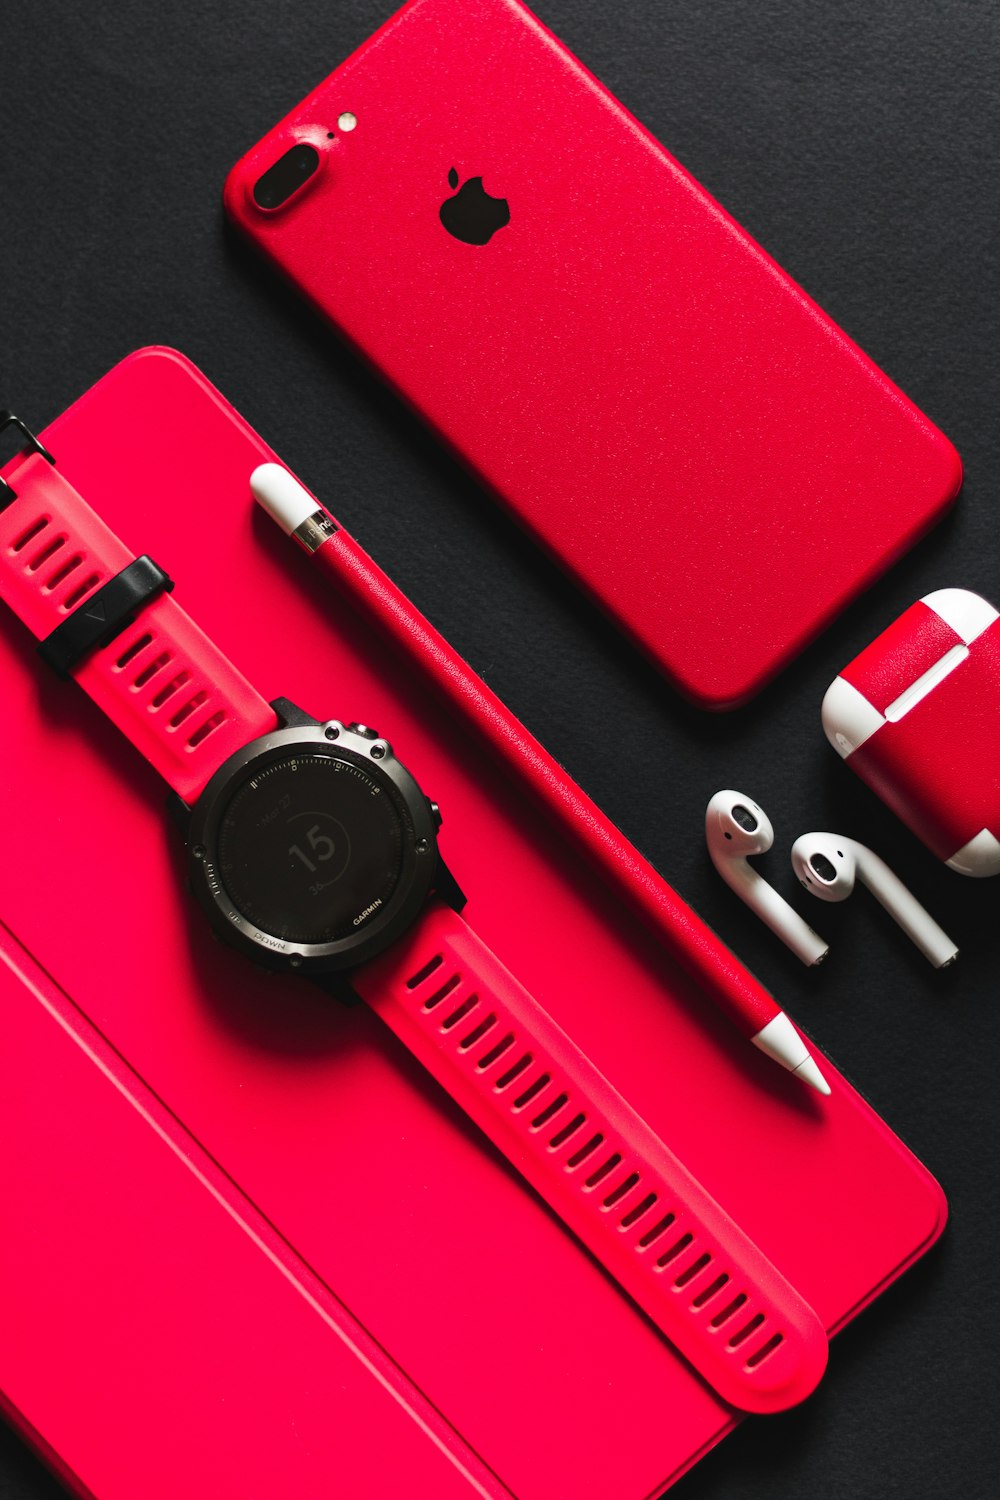 reloj inteligente, lápiz óptico, AirPods y iPhone 7 rojo del producto sobre superficie negra